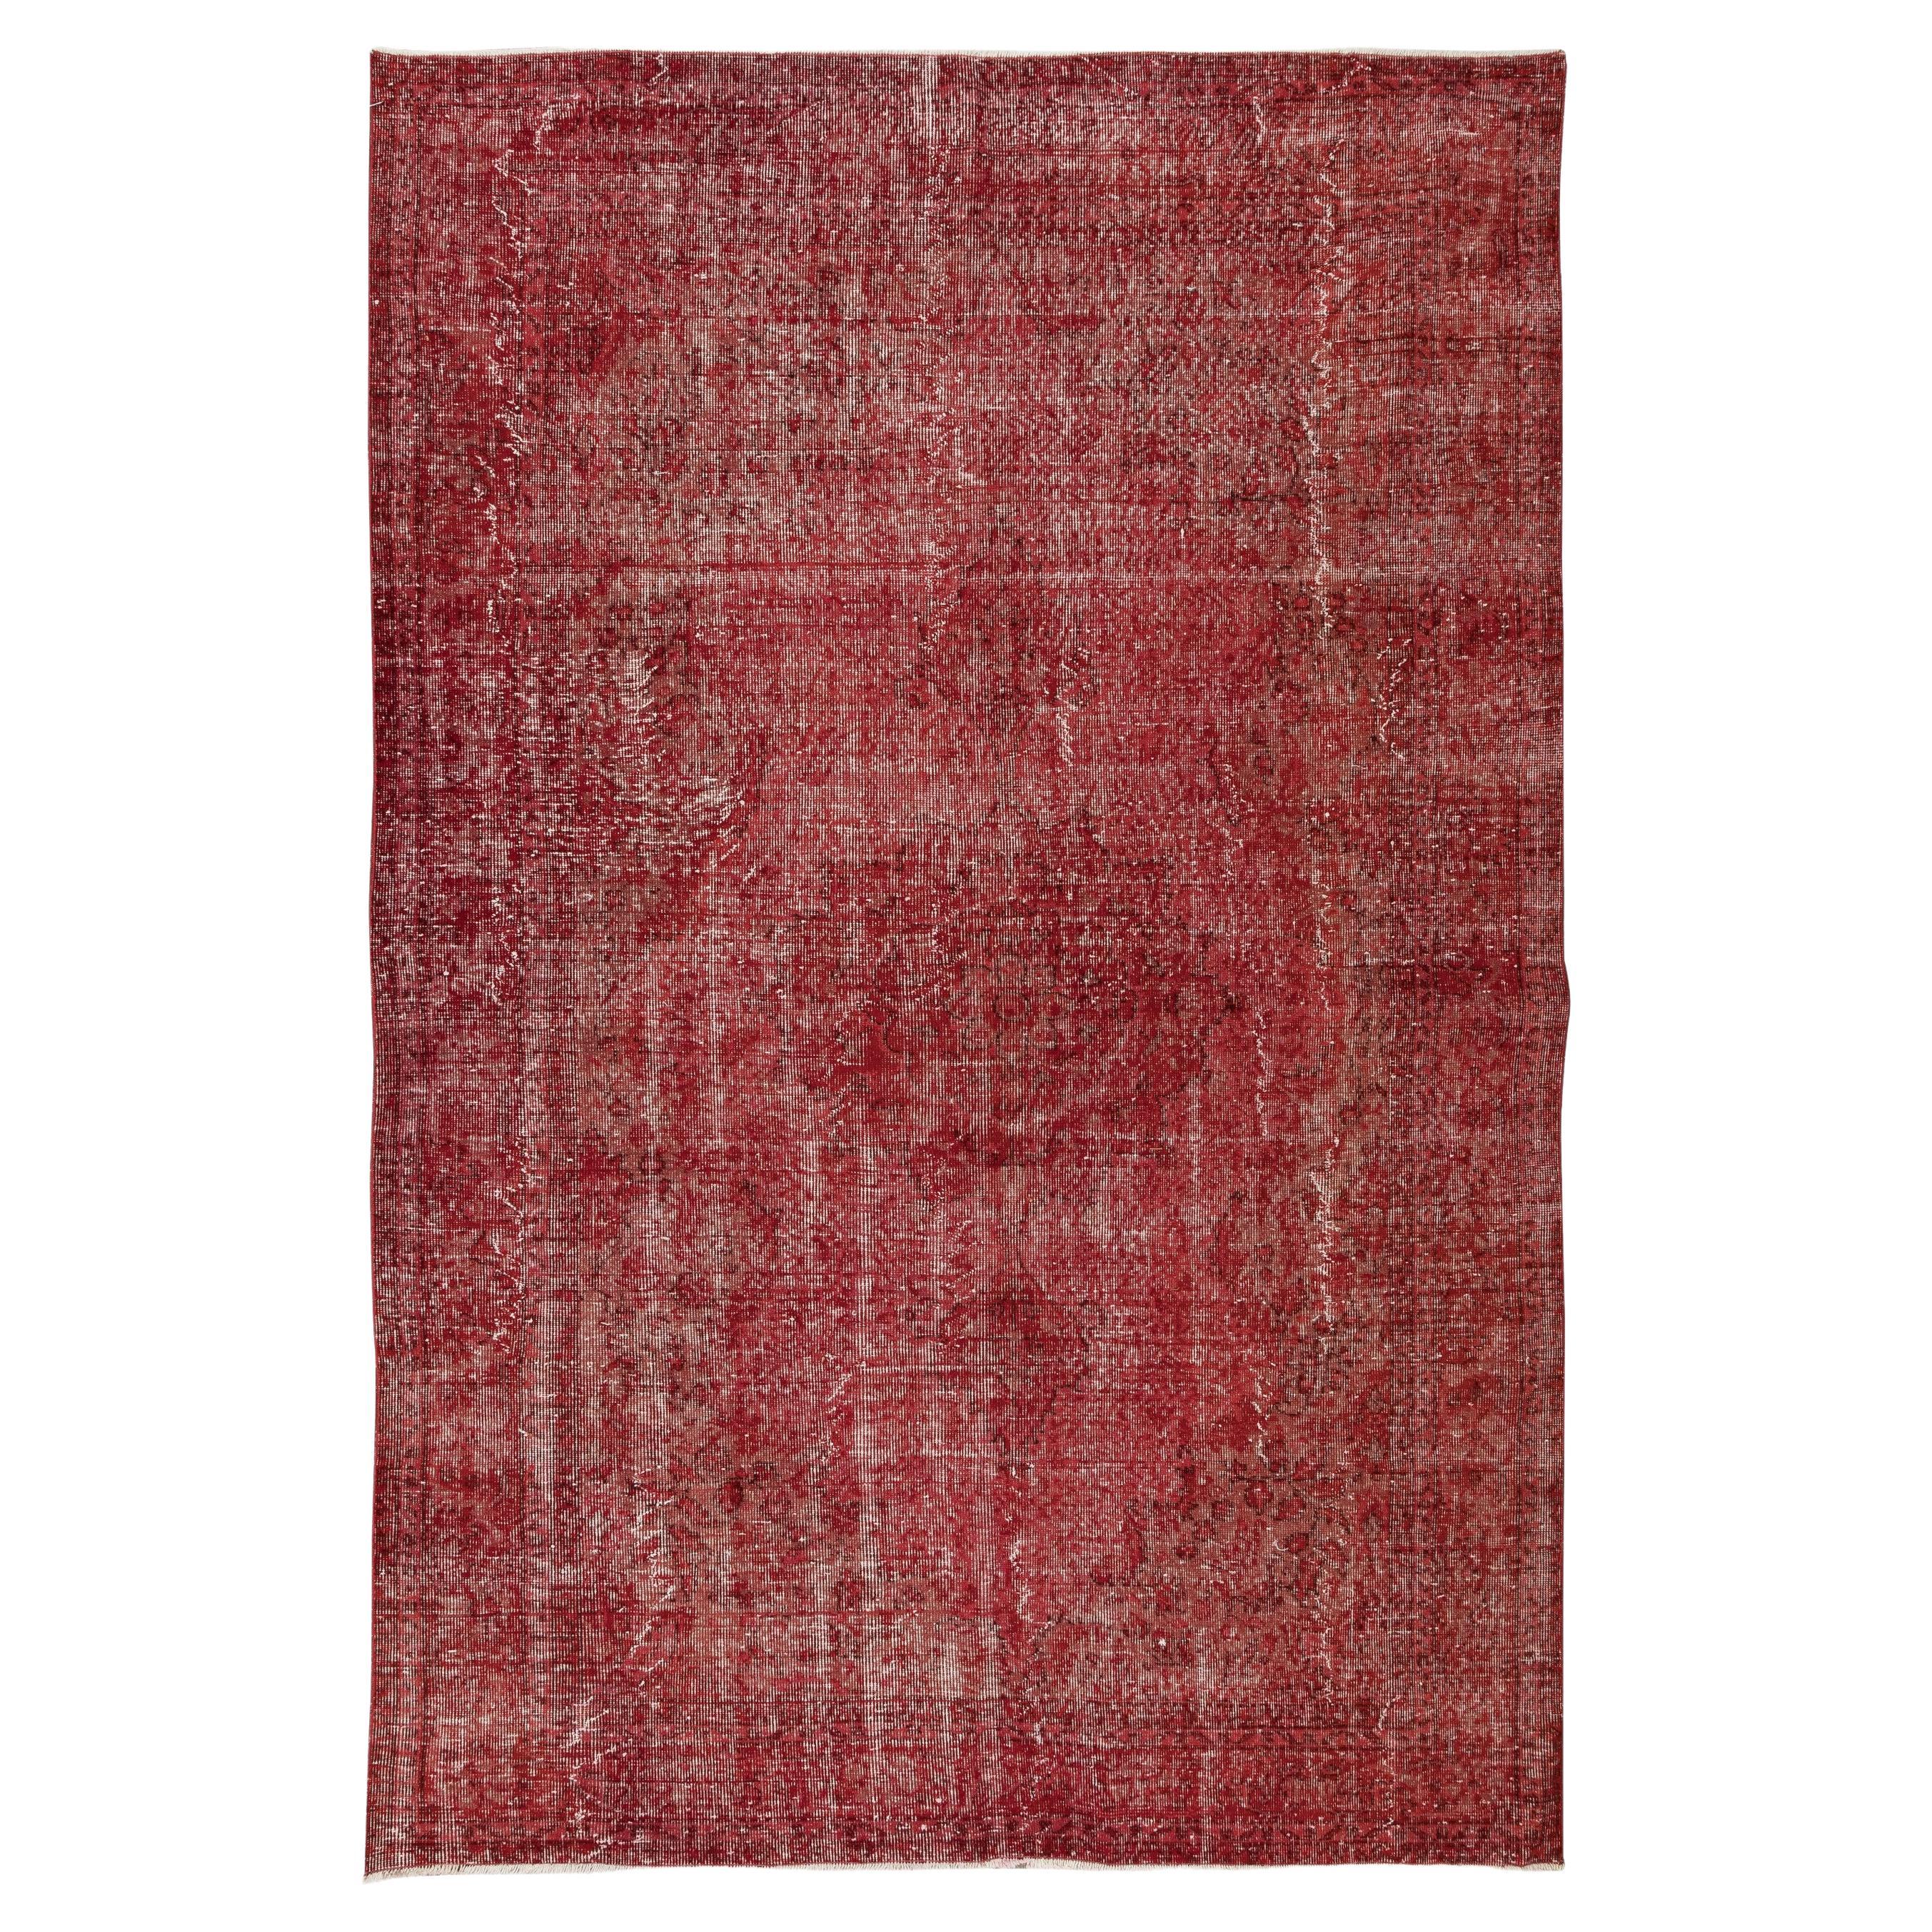 6.7x9.6 Ft Handgeknüpfter türkischer Vintage-Teppich in Rot, 4 moderne Inneneinrichtungen